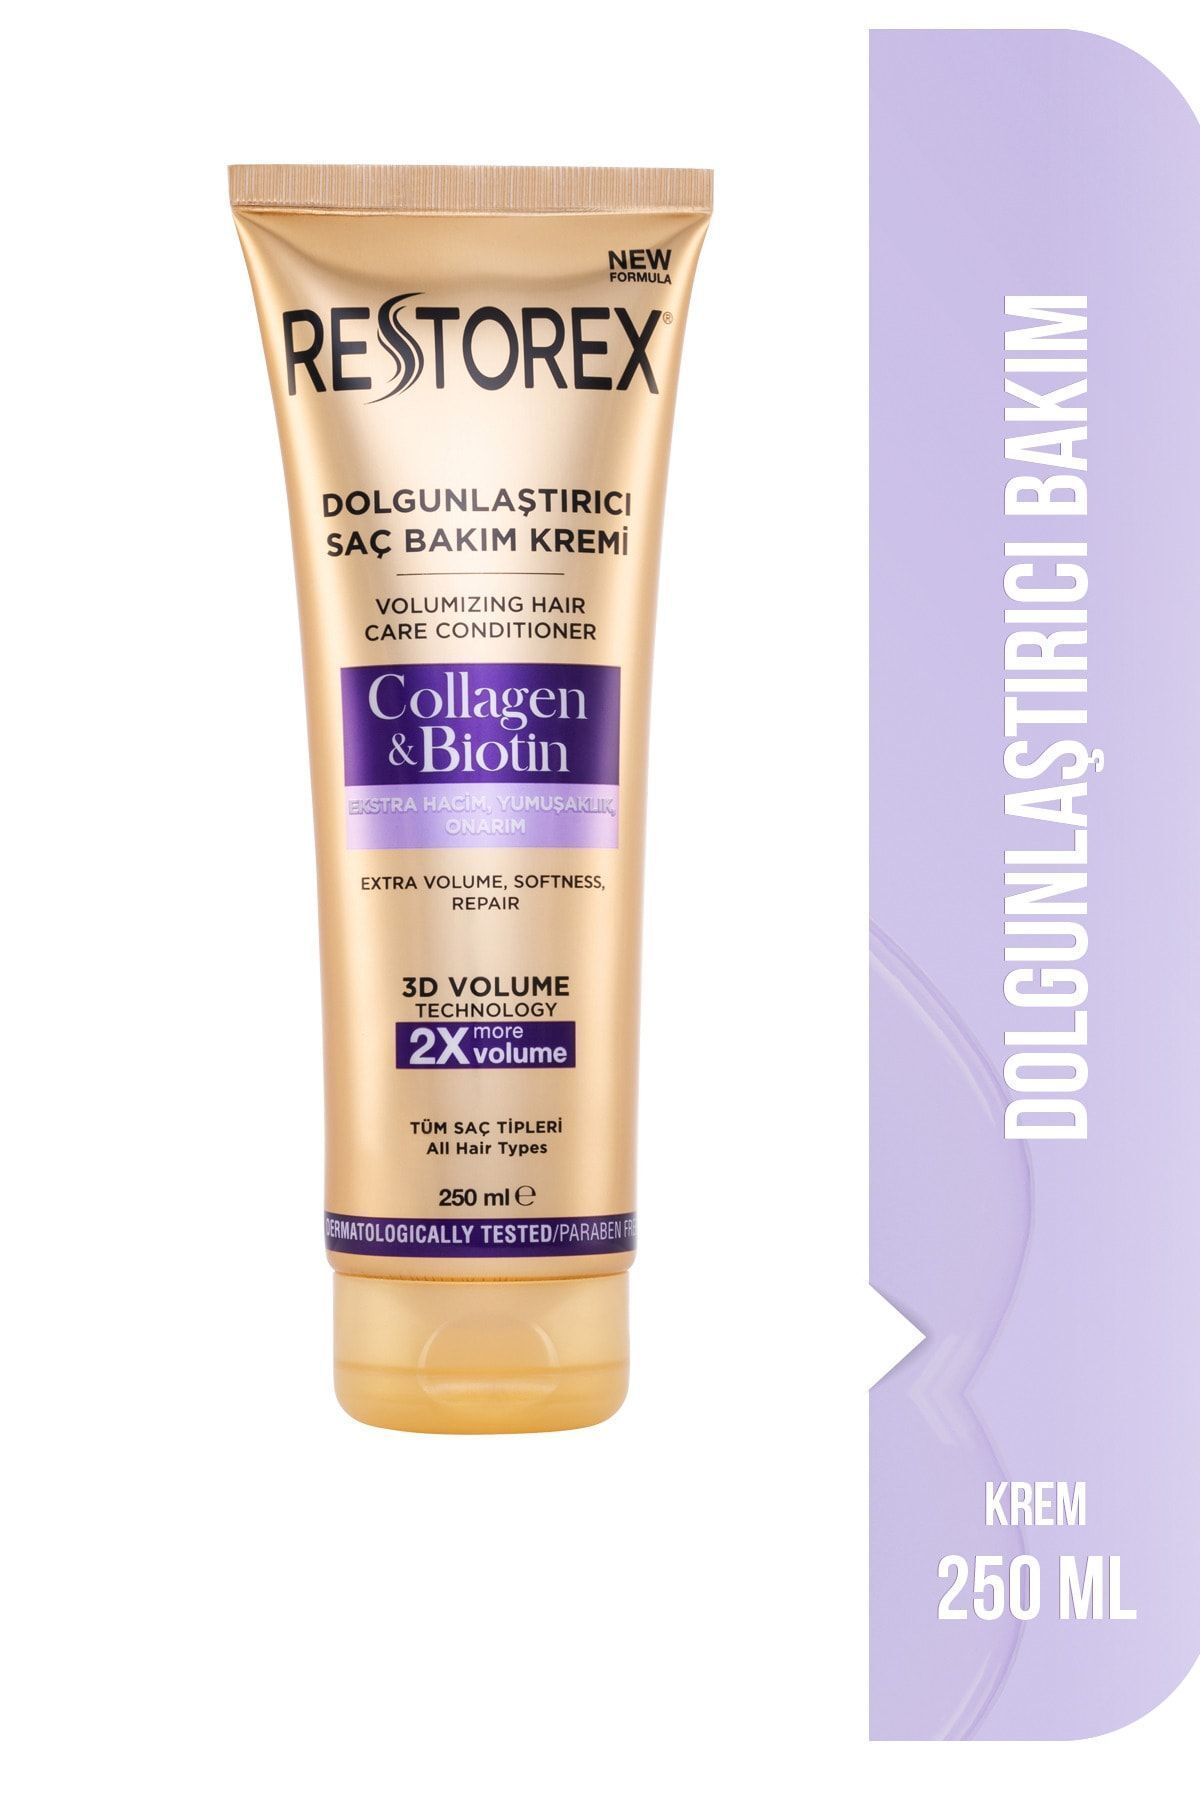 Restorex Dolgunlaştırıcı Saç Bakım Kremi Collagen & Biotin 250 Ml